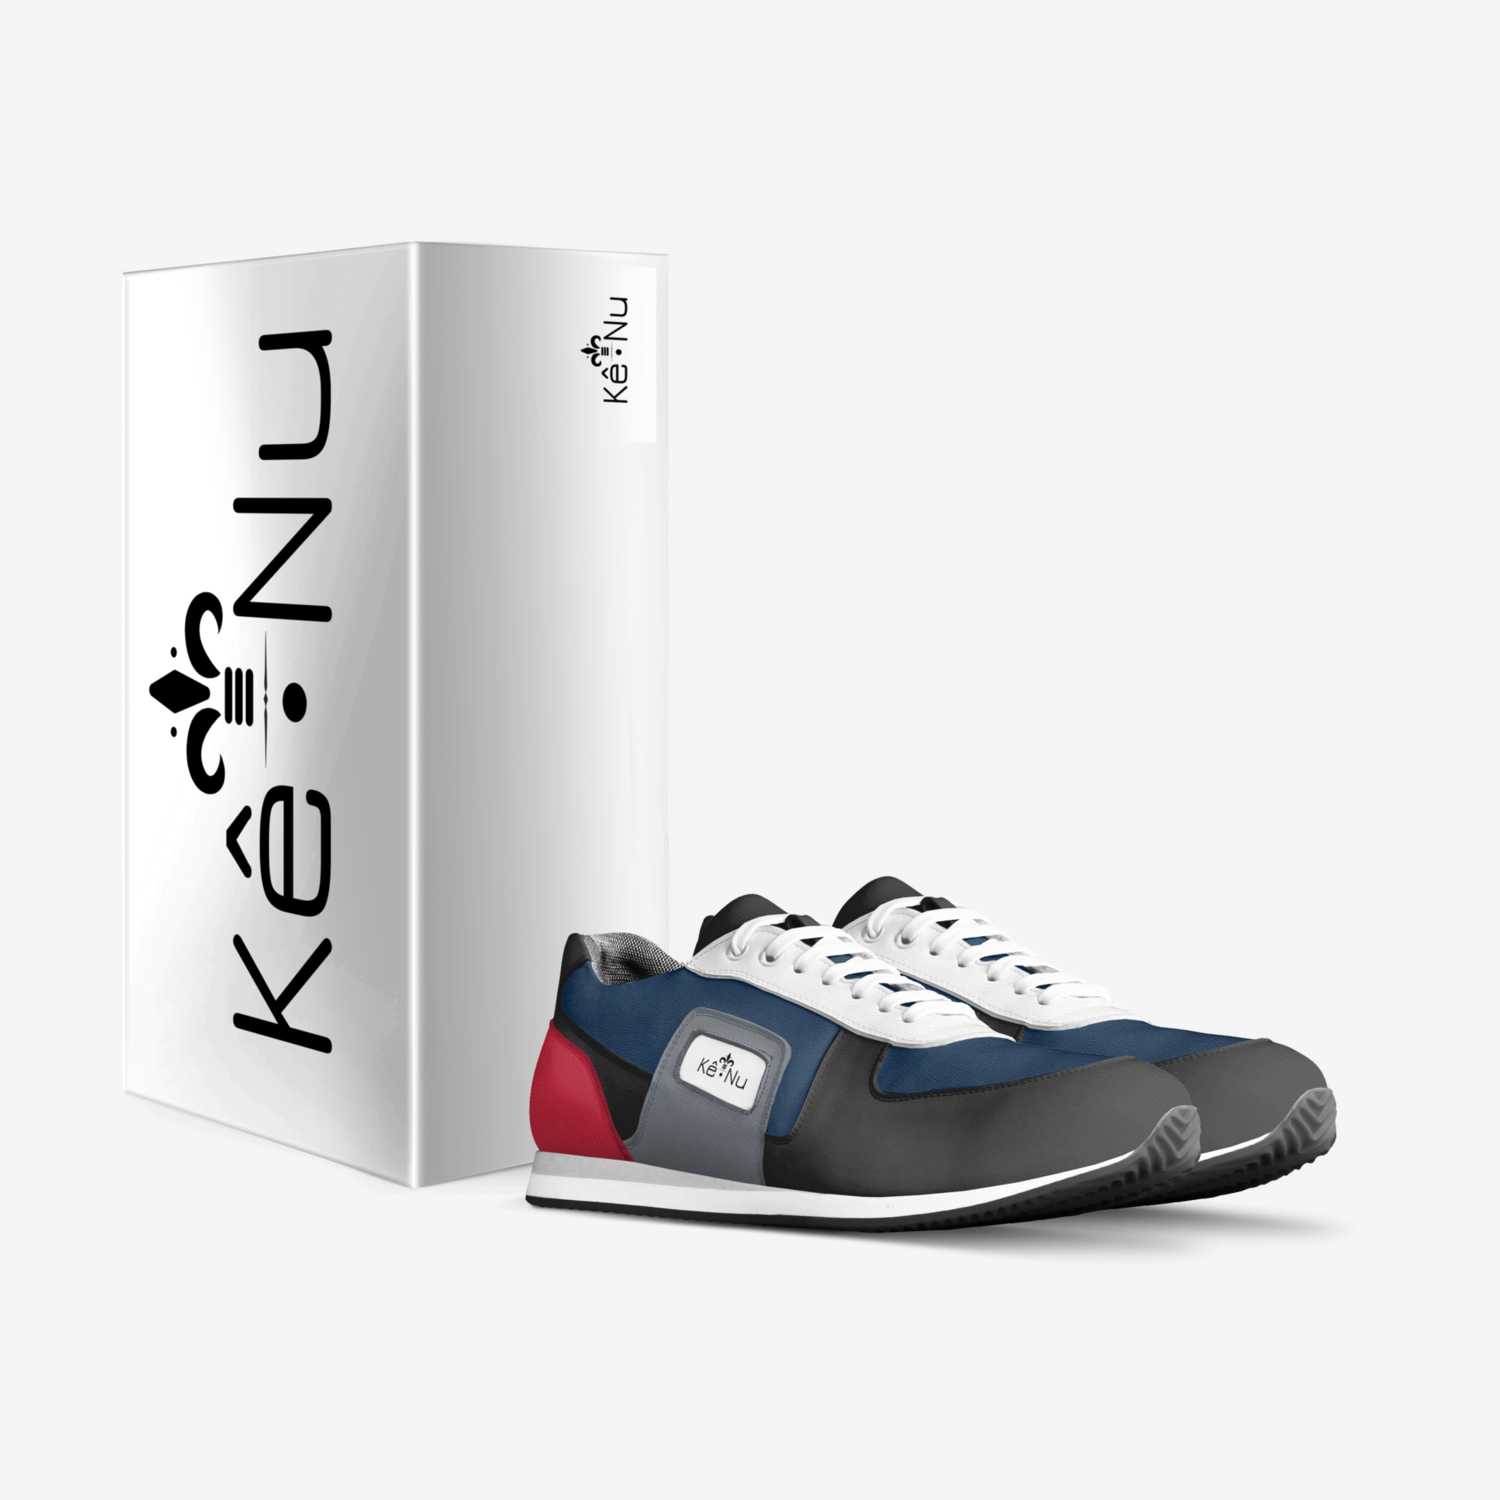 Kê Nu custom made in Italy shoes by Unek Depariz | Box view